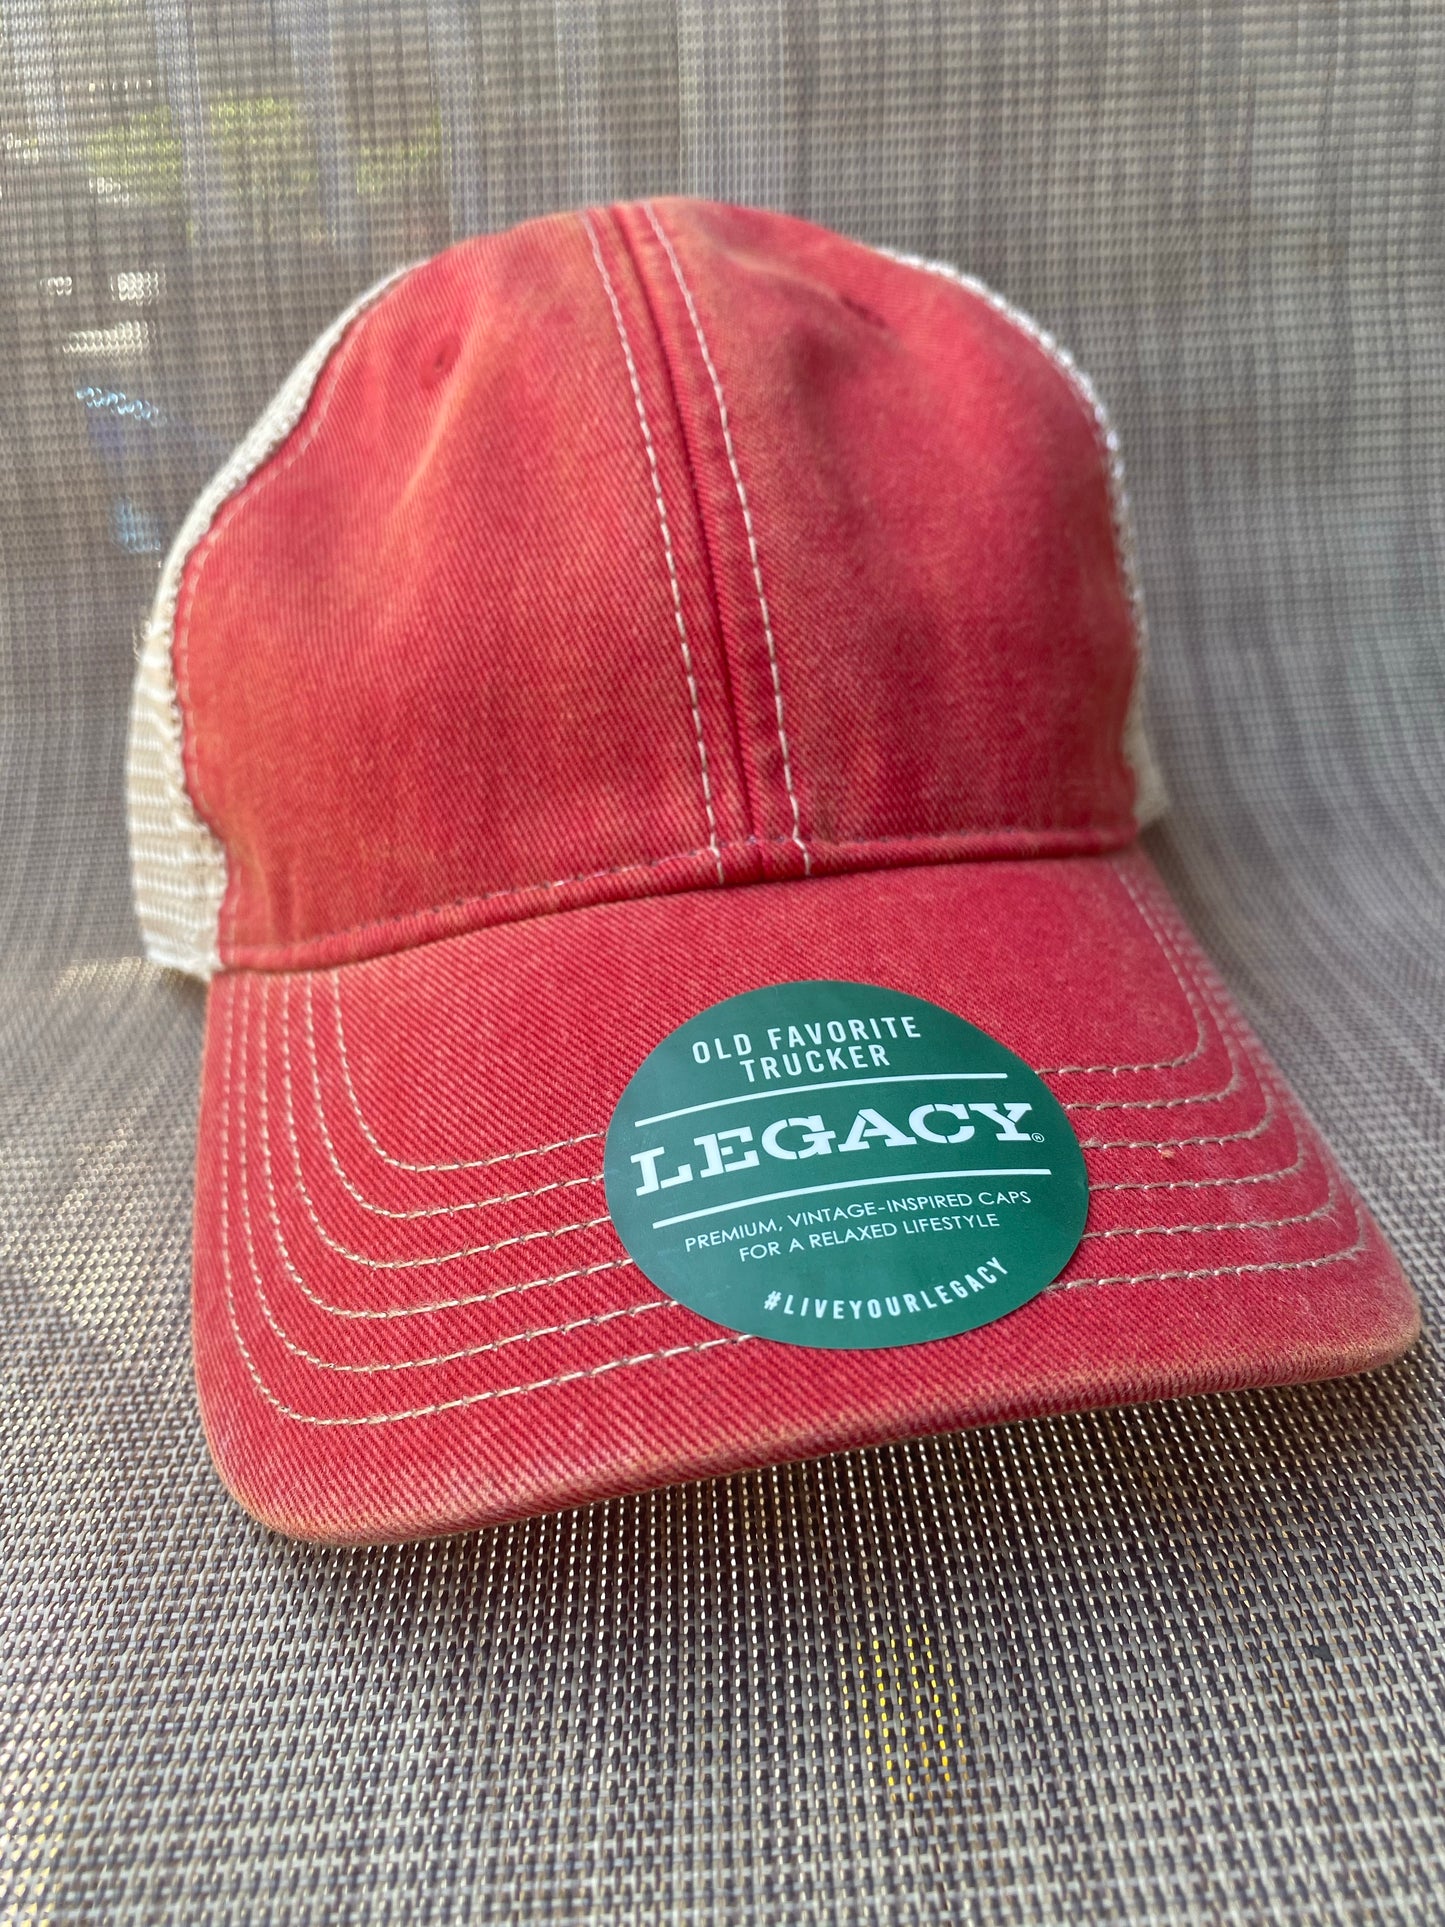 Legacy Adjustable Hats